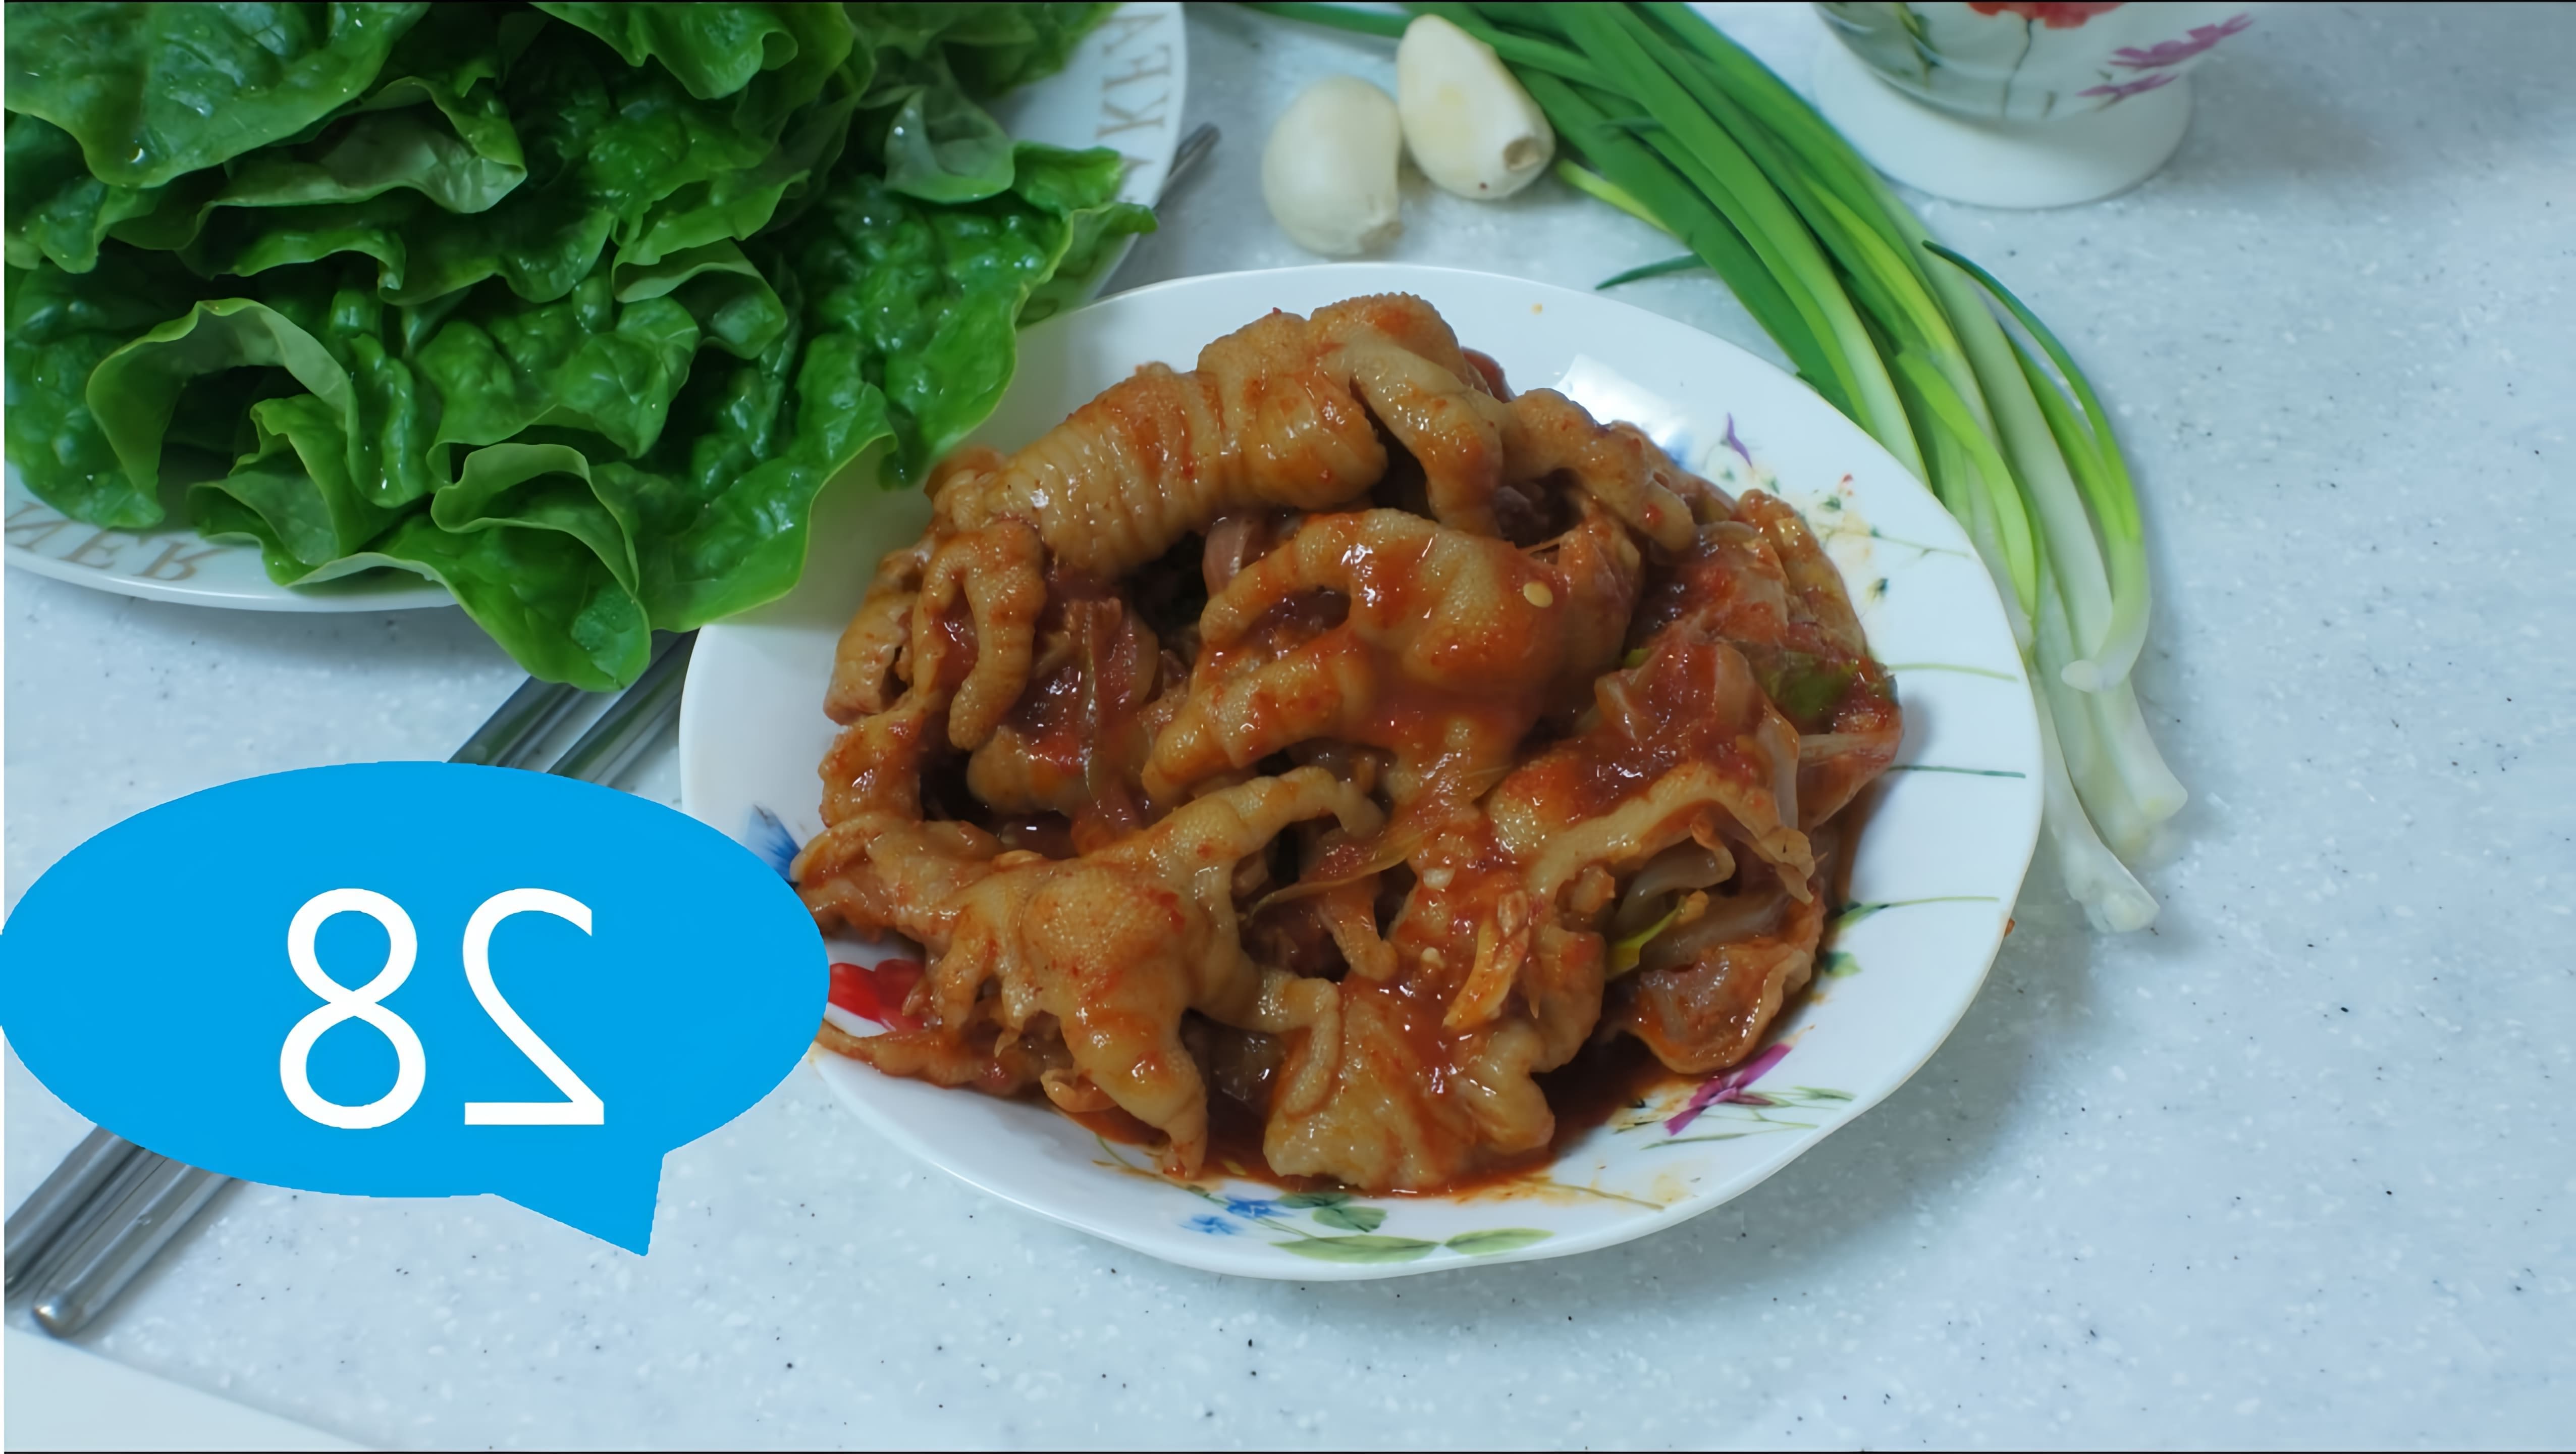 В этом видео демонстрируется рецепт приготовления такпаль - острых куриных лапок по-корейски